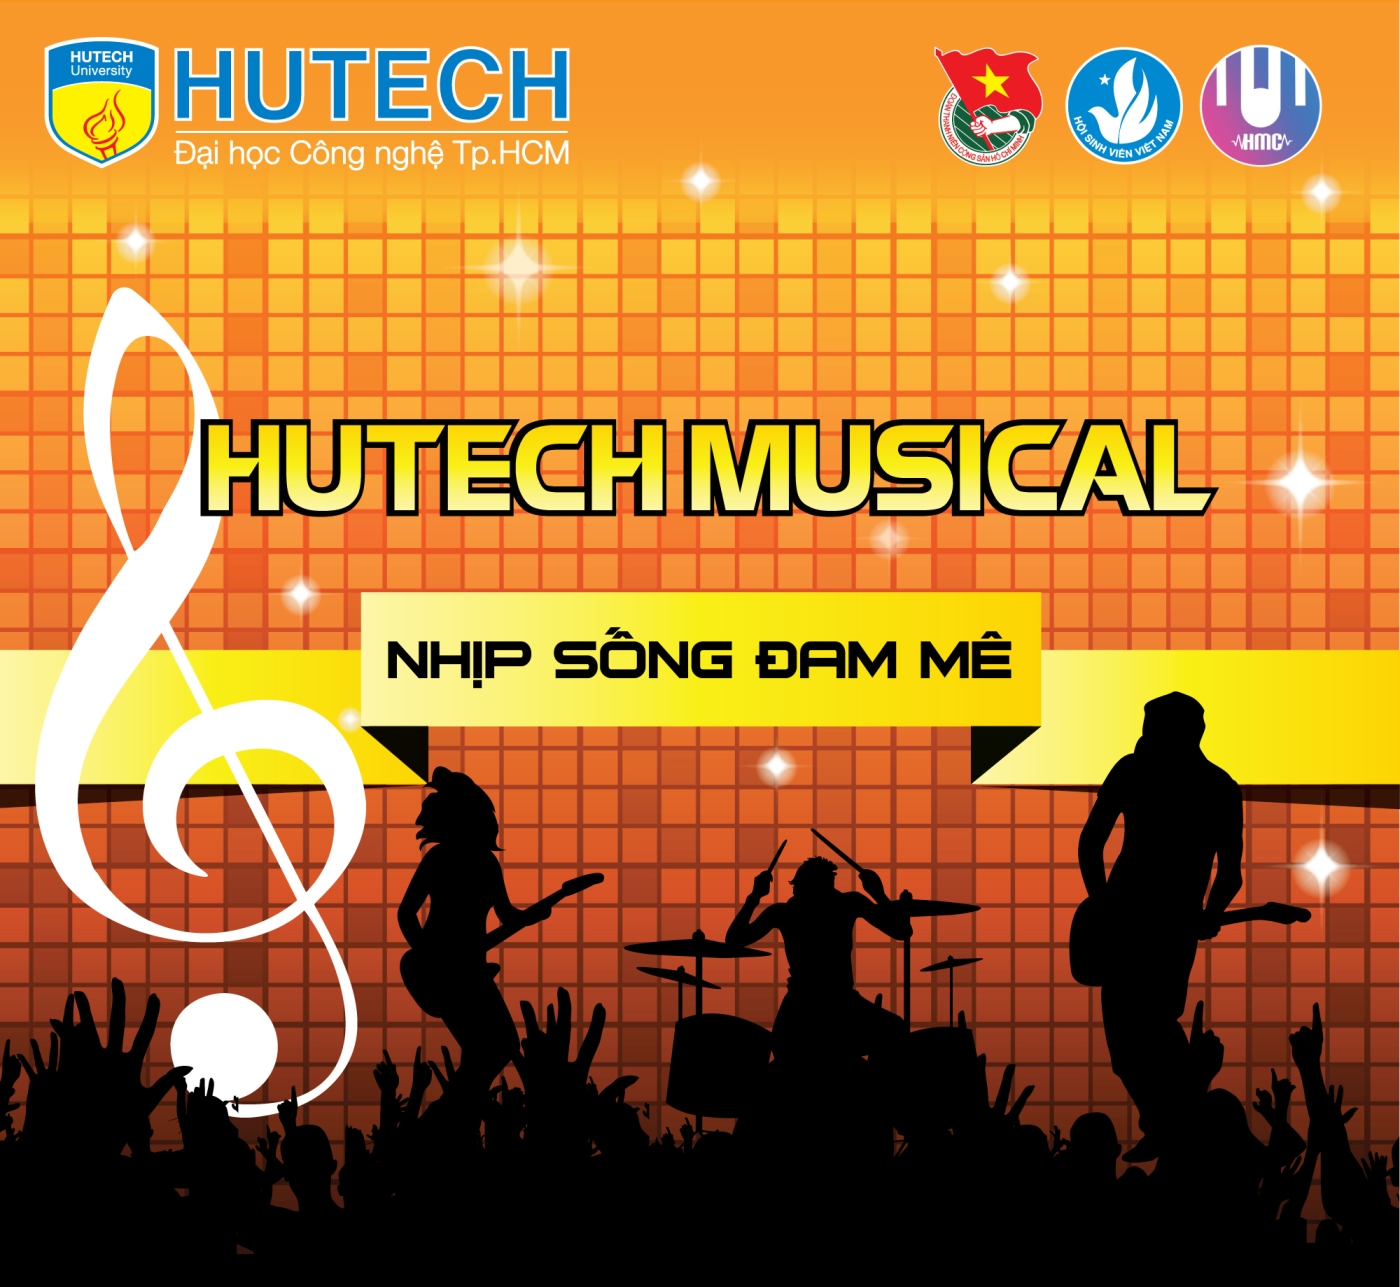  Đón chờ đêm Gala đầu tiên của HUTECH Musical - Nhịp sống đam mê 11